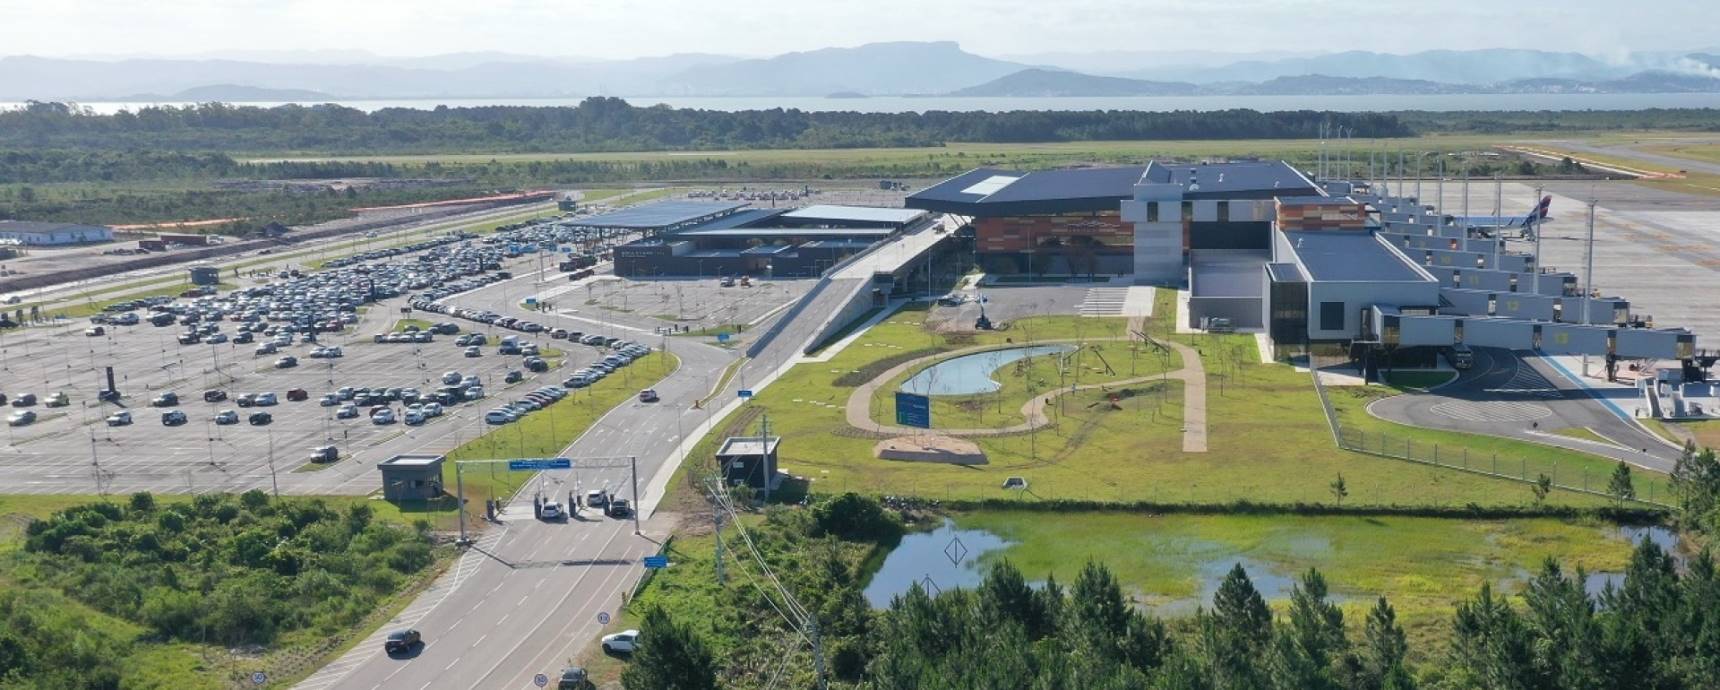 Floripa Airport fecha contrato com aplicativo de mobilidade Garupa